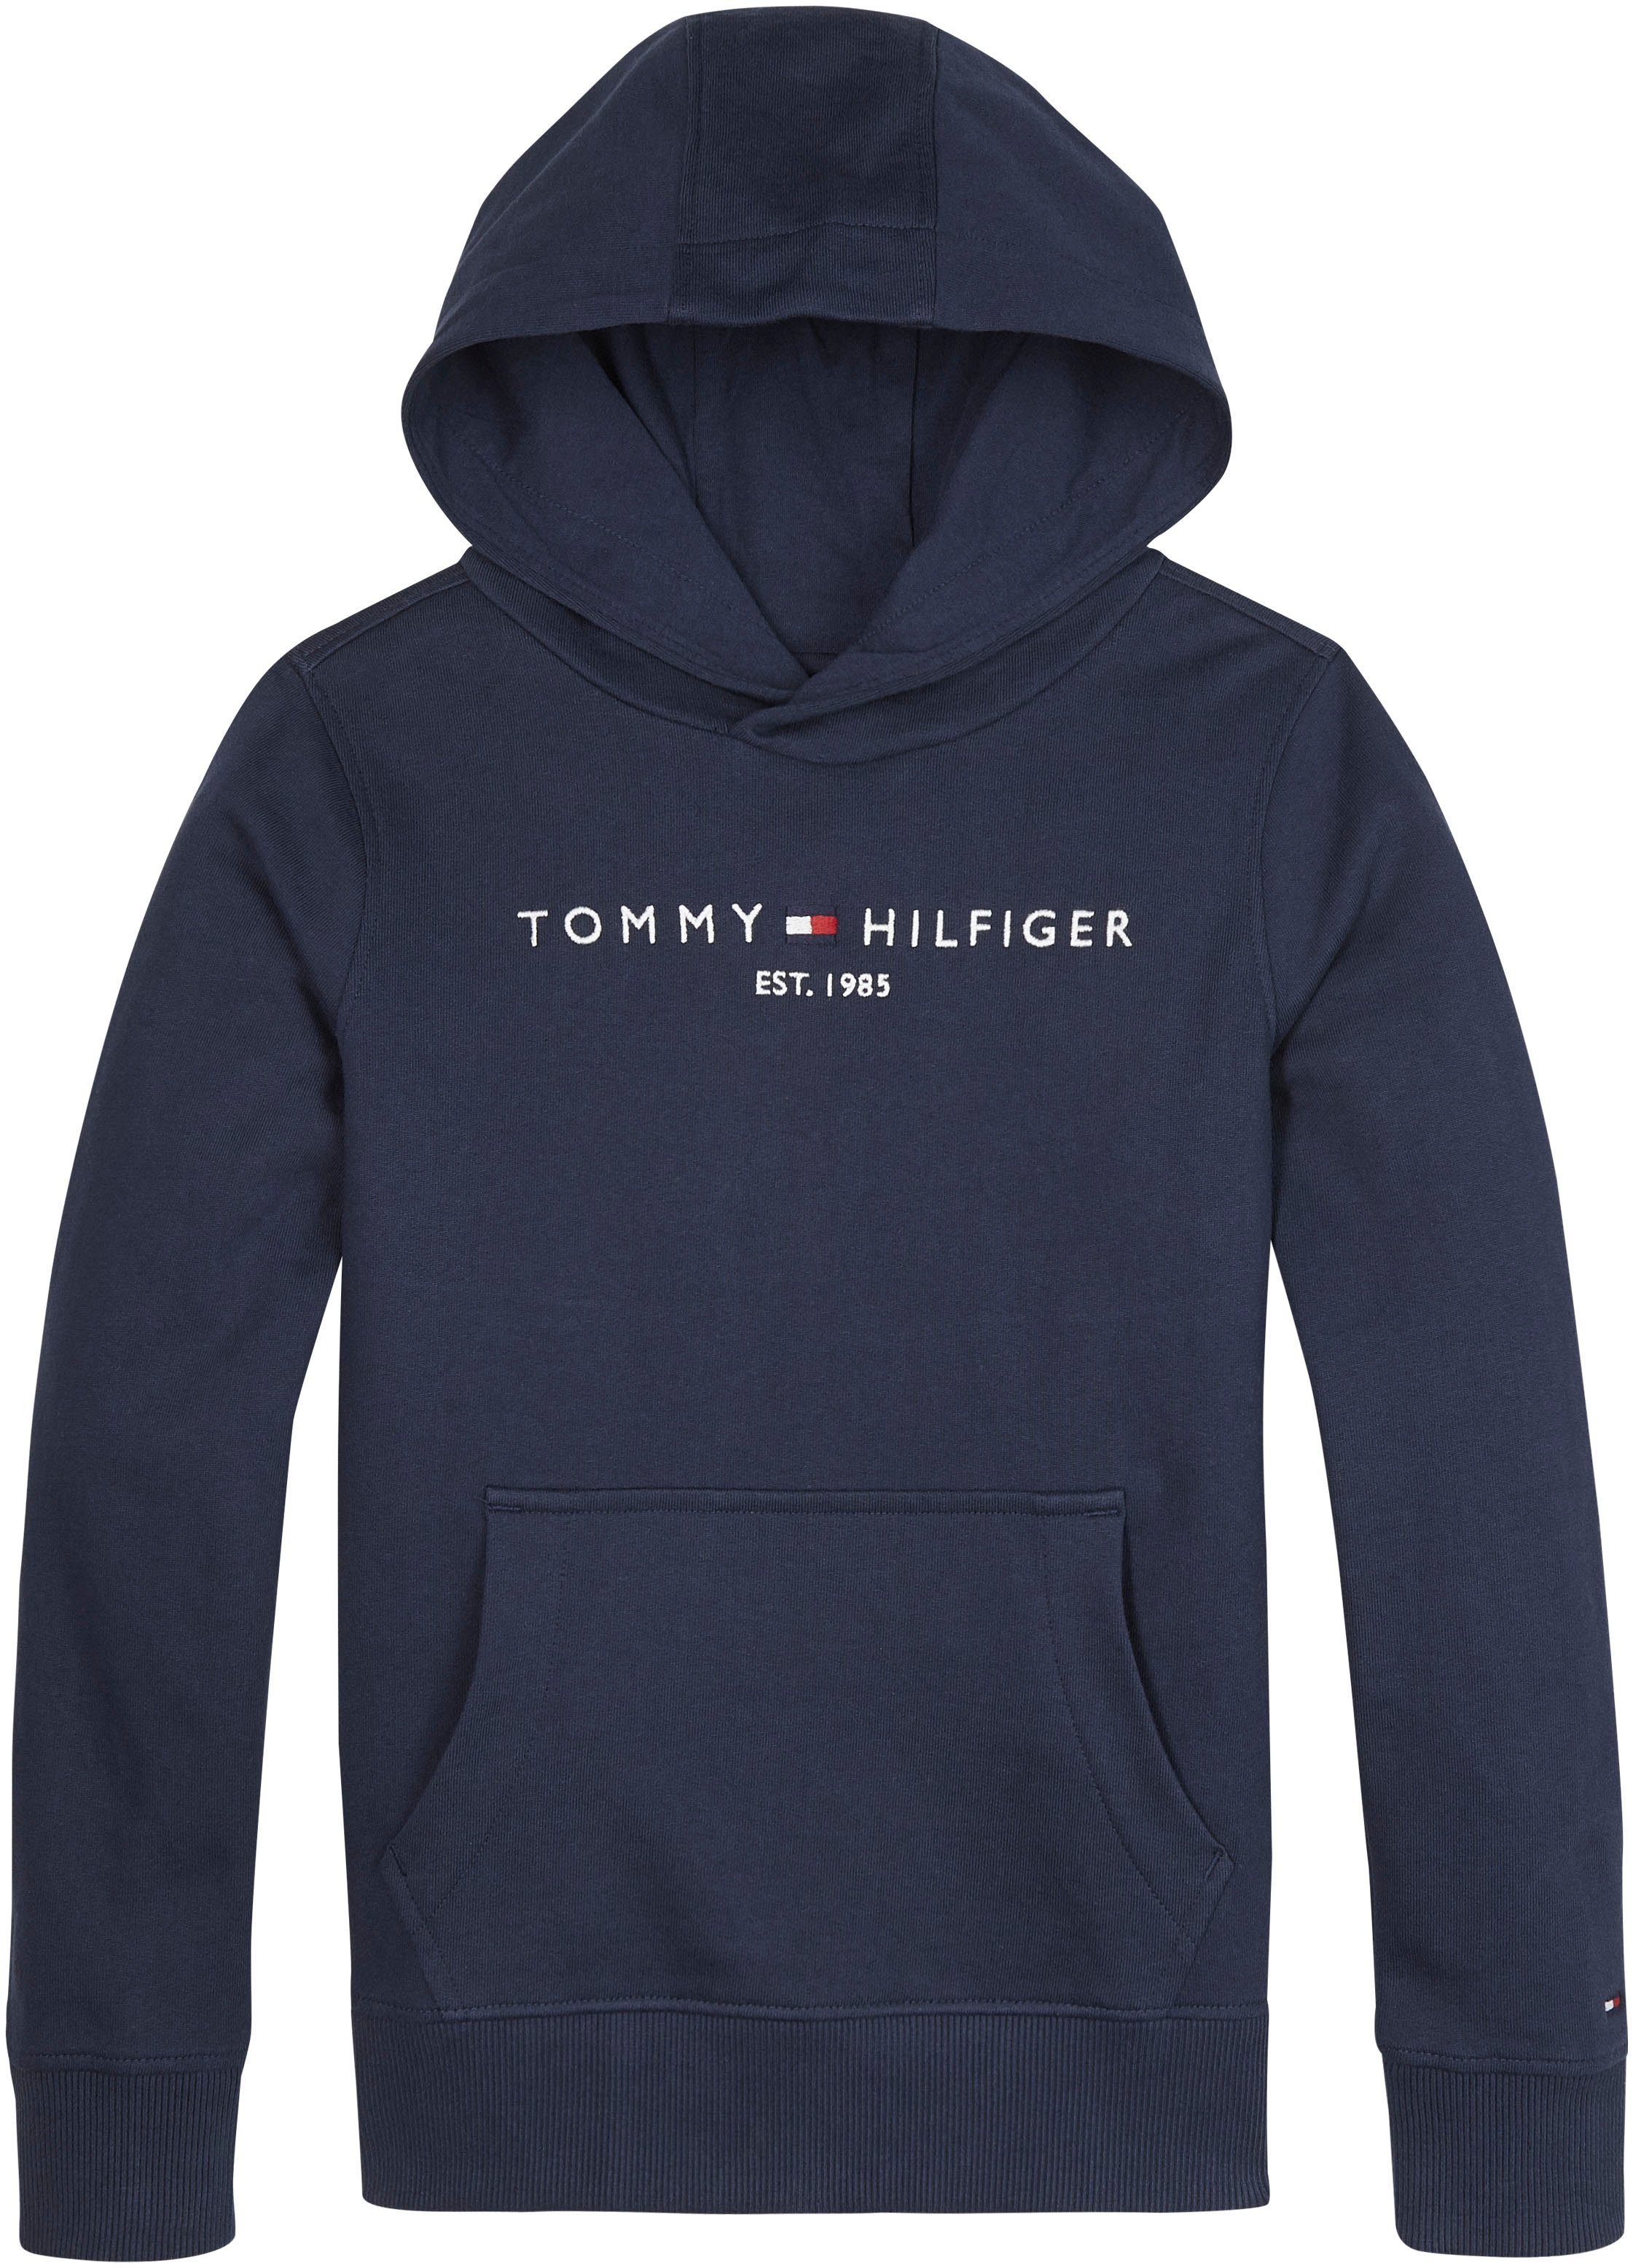 ESSENTIAL Hilfiger Tommy für Mädchen und Jungen HOODIE Kapuzensweatshirt